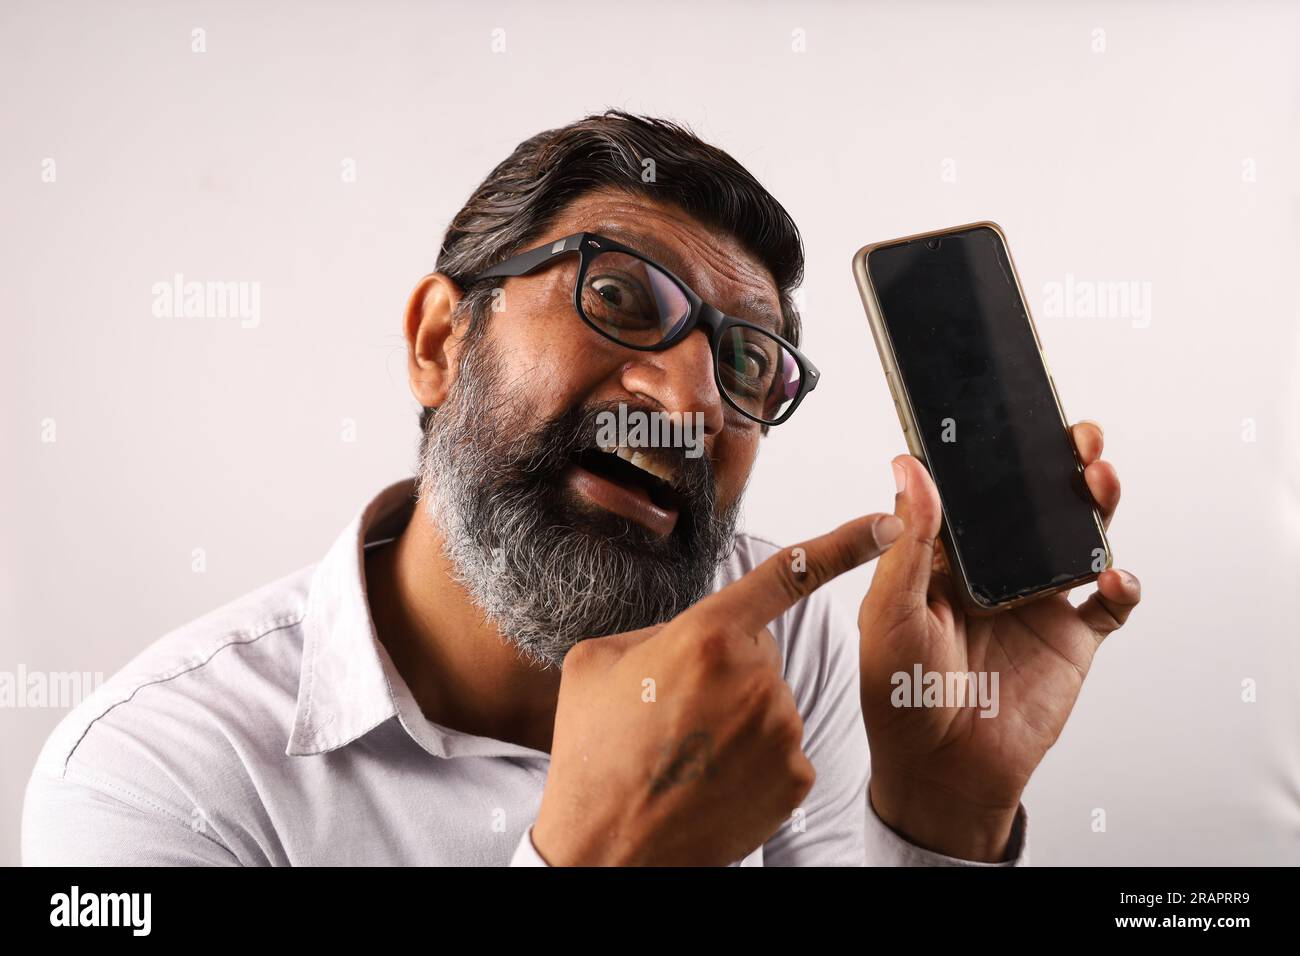 Homme barbu indien d'âge moyen portant une chemise tenant et montrant un téléphone portable dans sa main. Expressions funky sur un fond d'avion. Banque D'Images